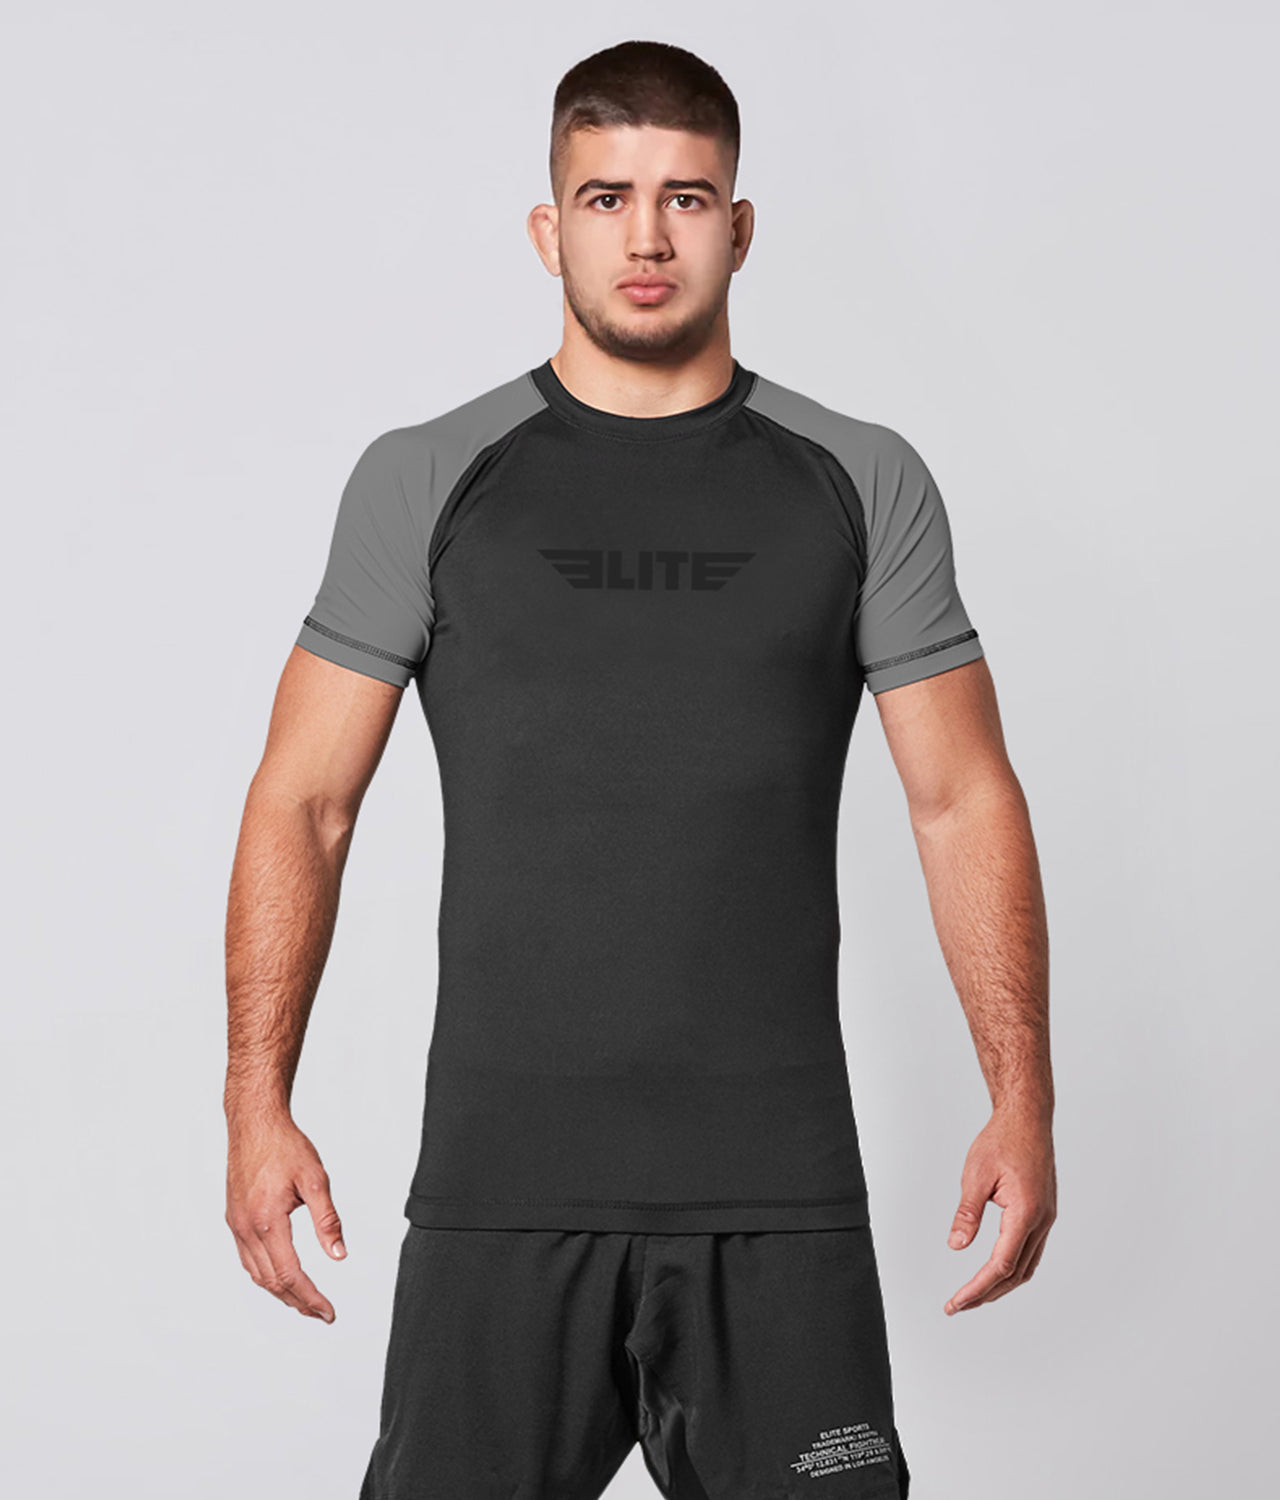 Elite Sports Men's Standard Gray Short Sleeve Wrestling Rash Guard